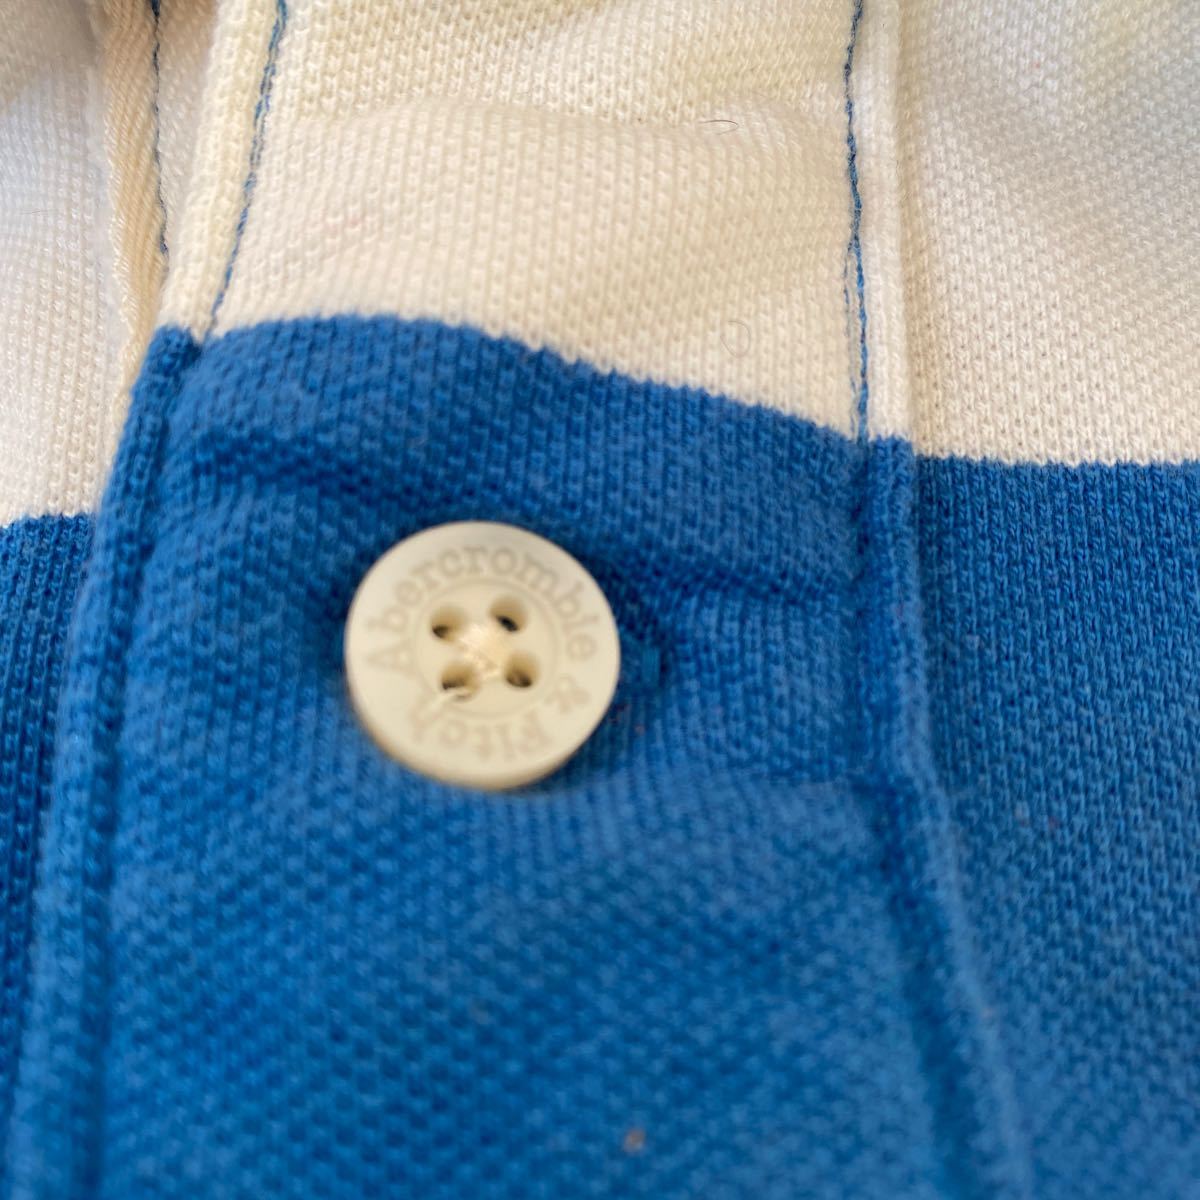 アバクロ Abercrombie&fitch メンズ ポロシャツL中古シミ汚れ色抜有 ロスにて購入本物 2～3回使用後クロゼット保管 ラガーシャツ ボーダー_画像5